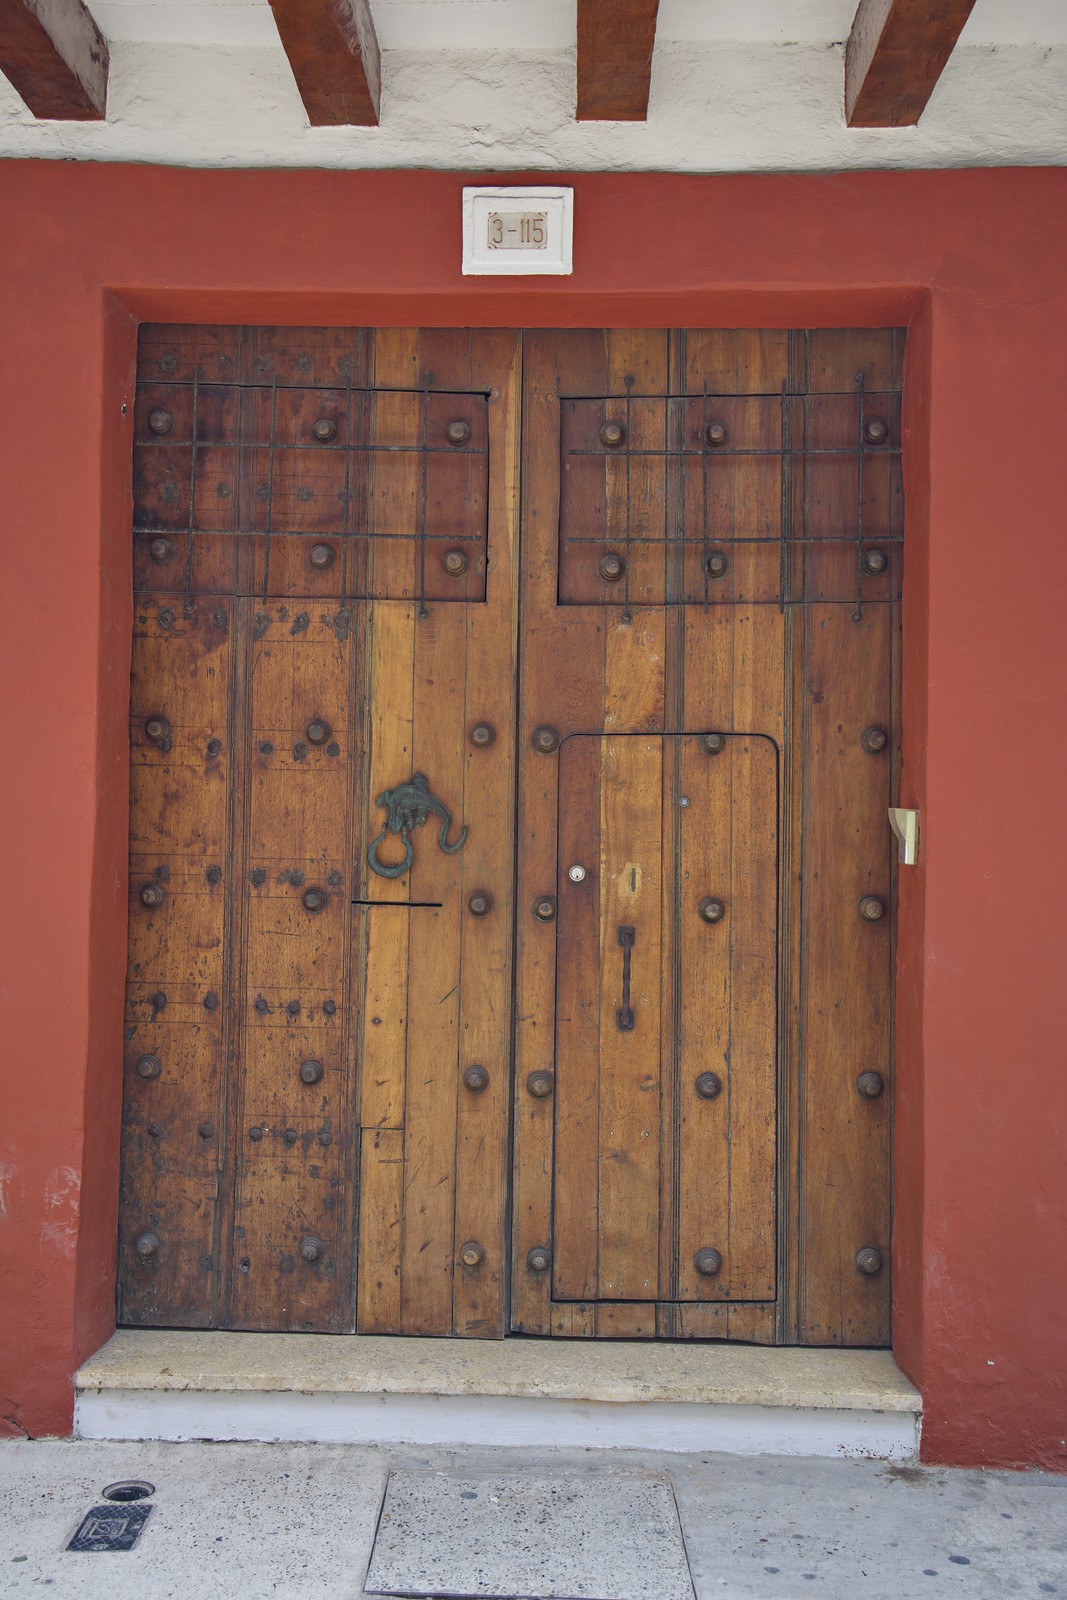 Ornate door with brass fixtures and a lizard door knocker